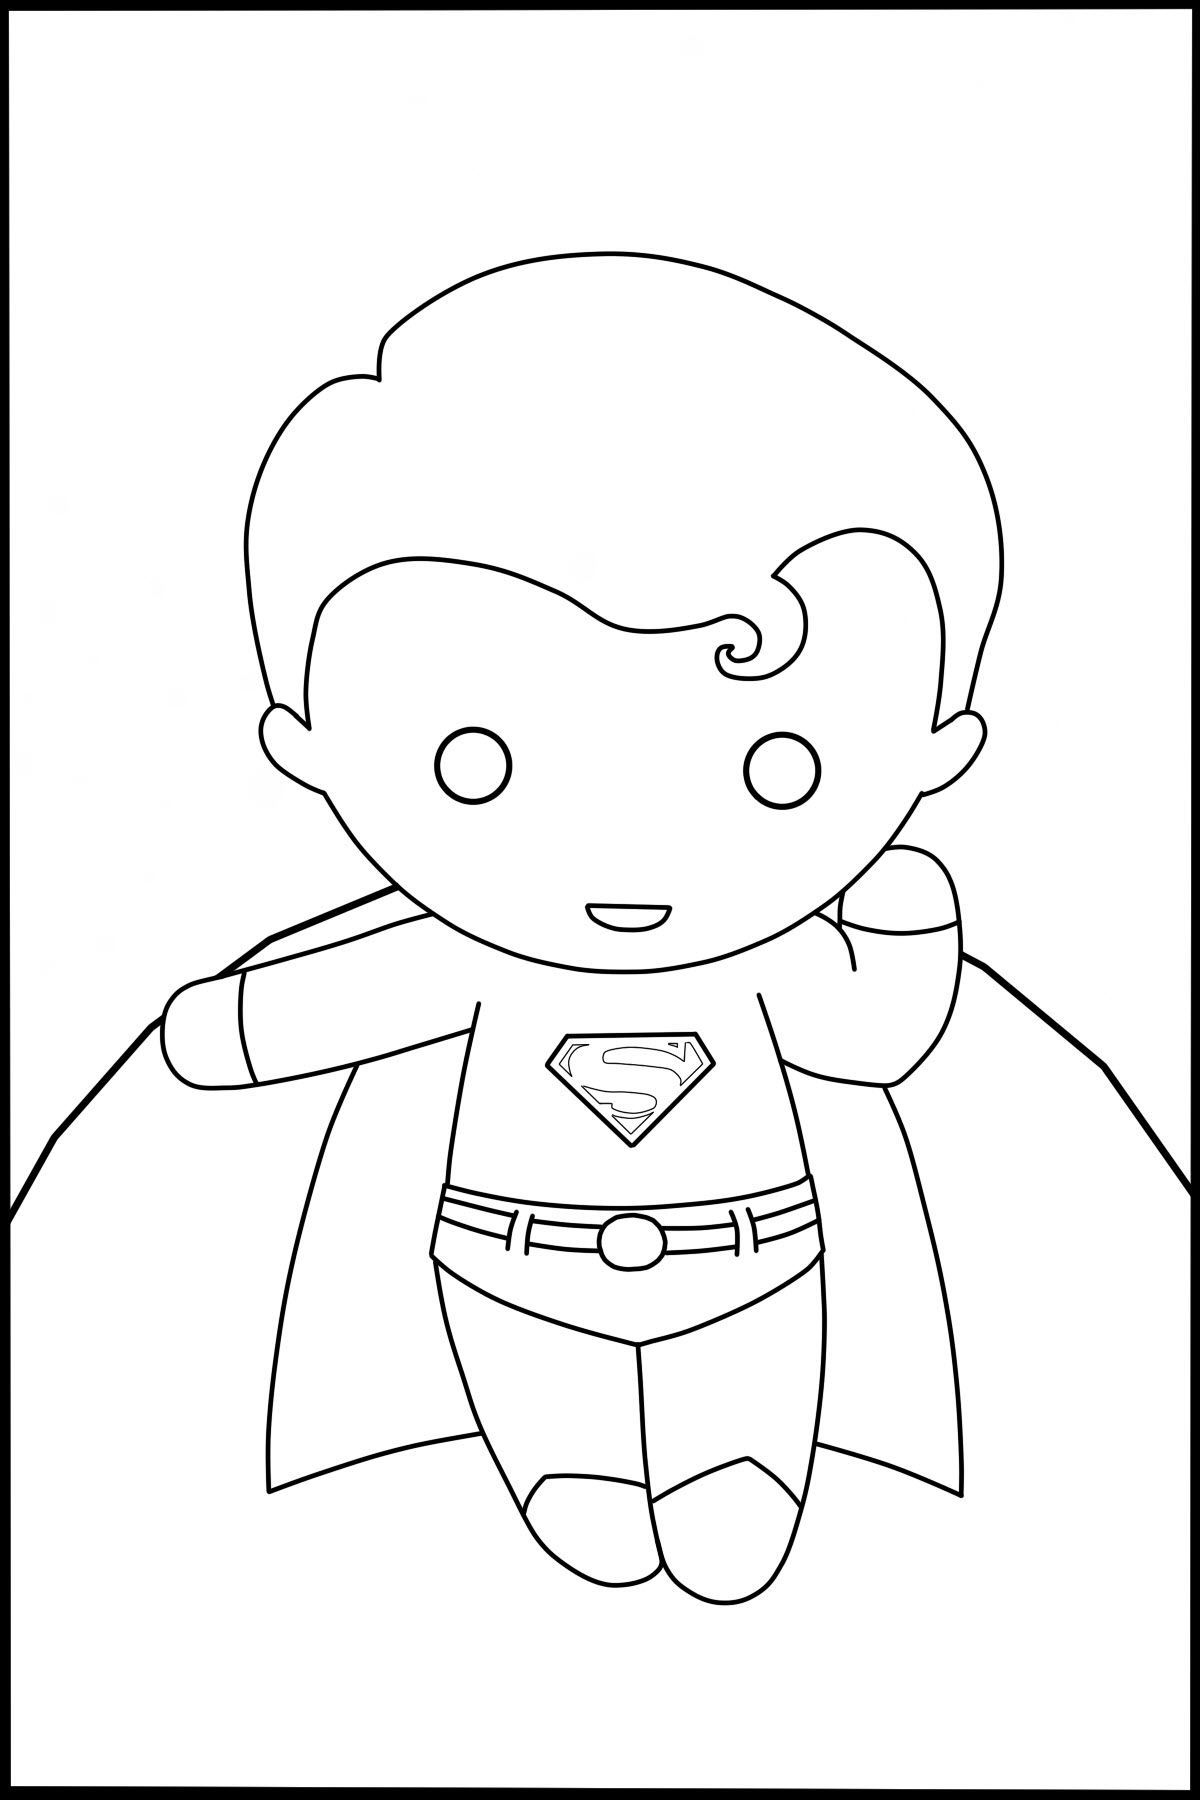 Hình tô màu siêu nhân Superman đơn giản